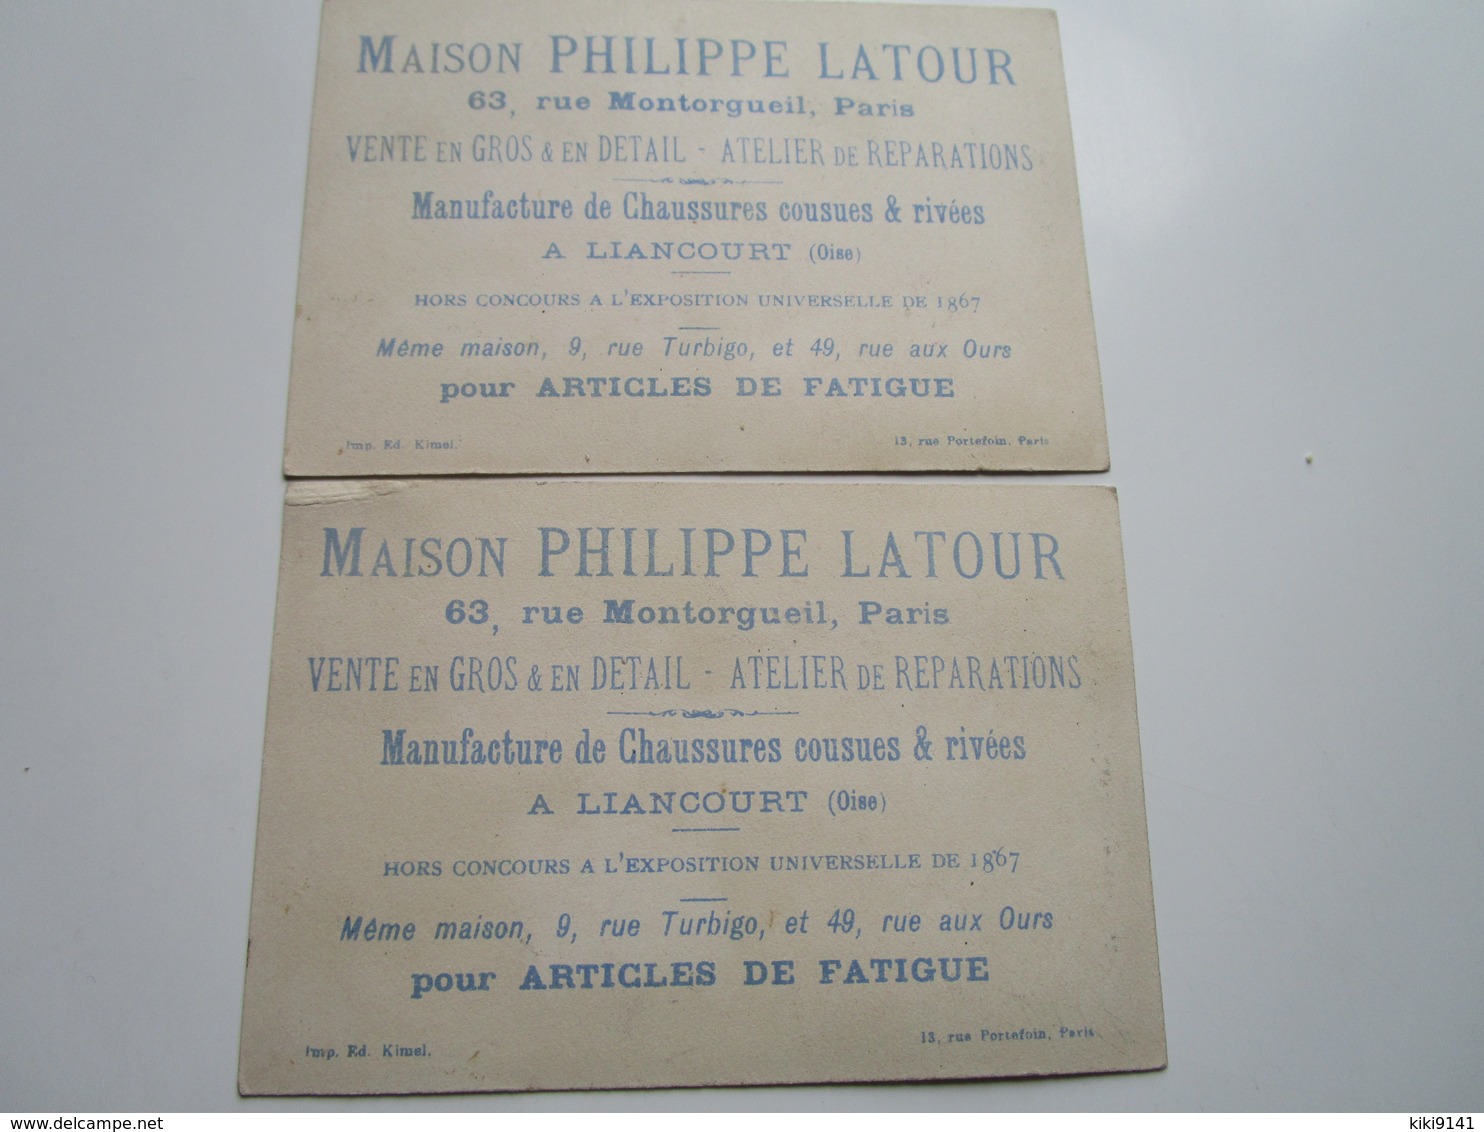 Maison PHILIPPE LATOUR - Manufacture Se Chaussures Cousues & Rivées (2 Chromos) - Liancourt